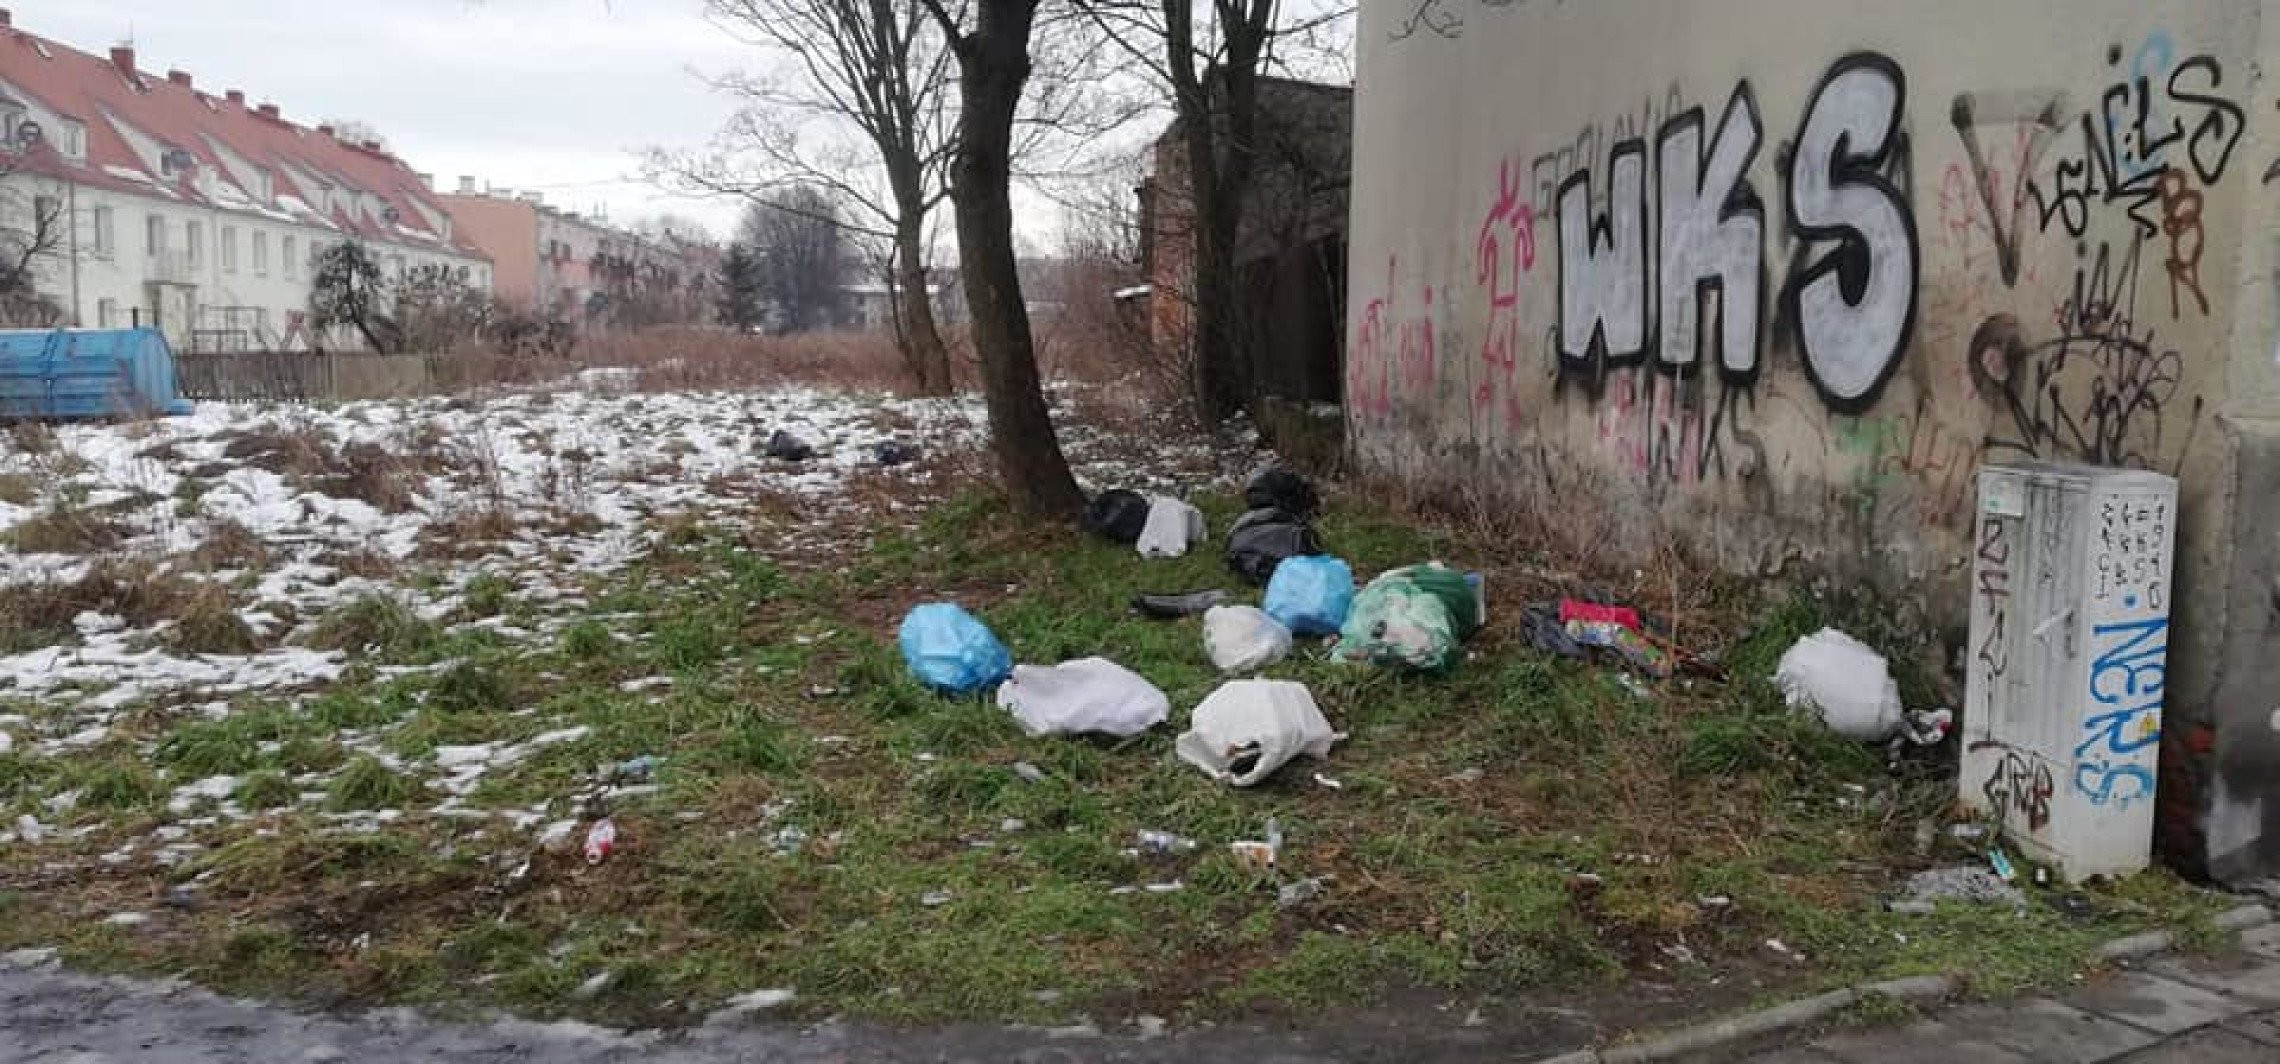 Inowrocław - Za podrzucenie odpadów dostał mandat